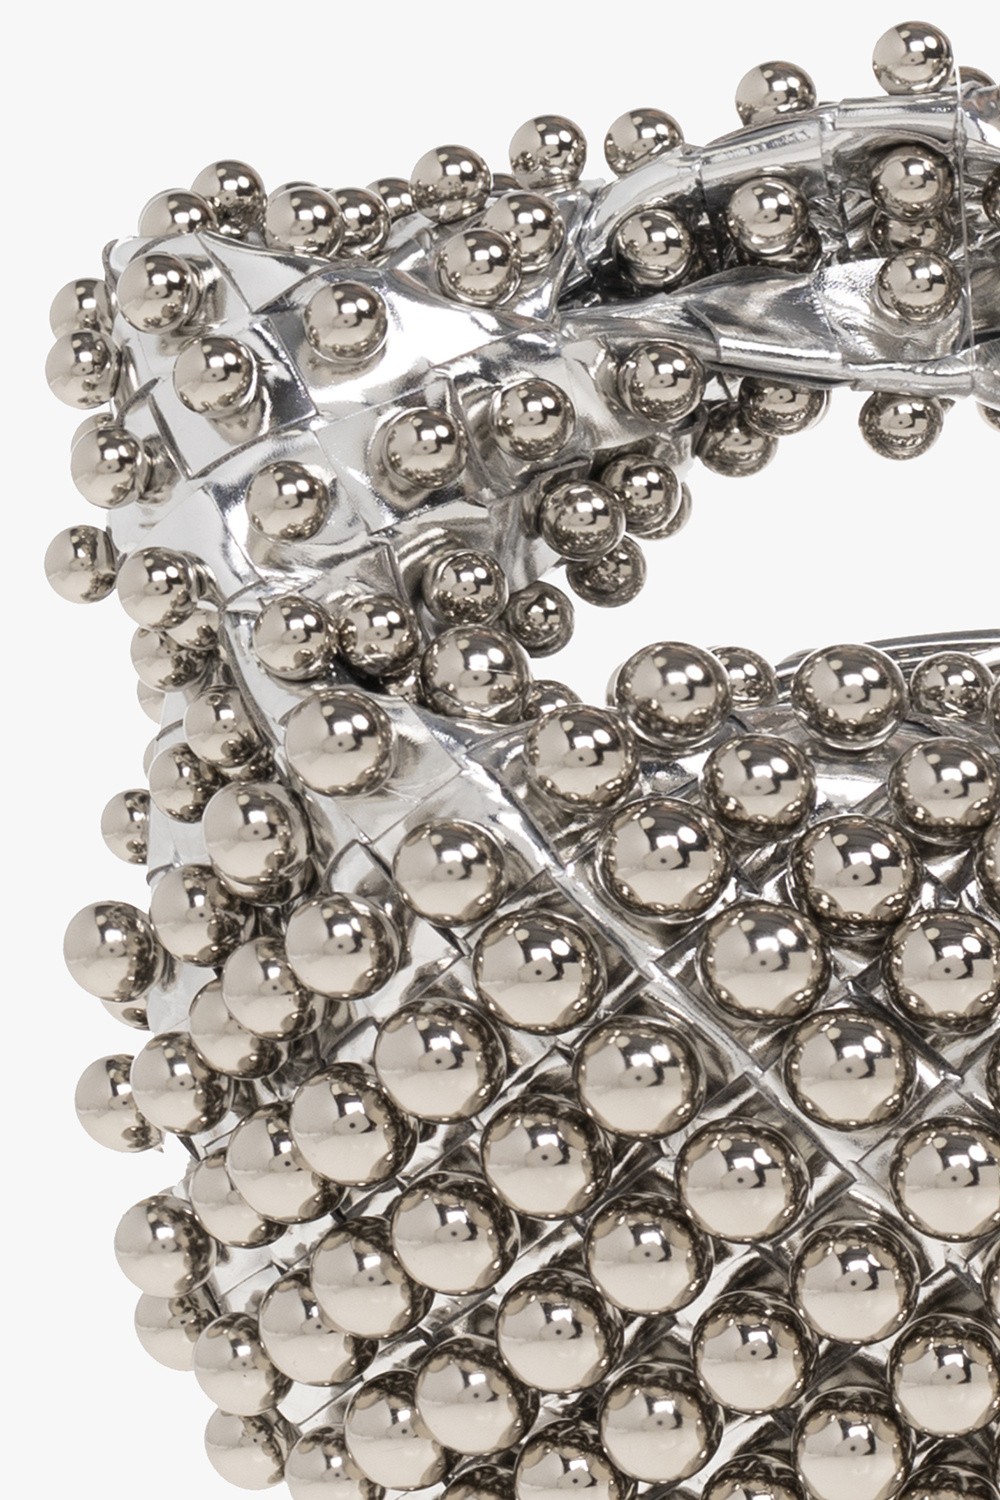 Silver 'Jodie Mini' handbag Bottega Veneta - Vitkac TW